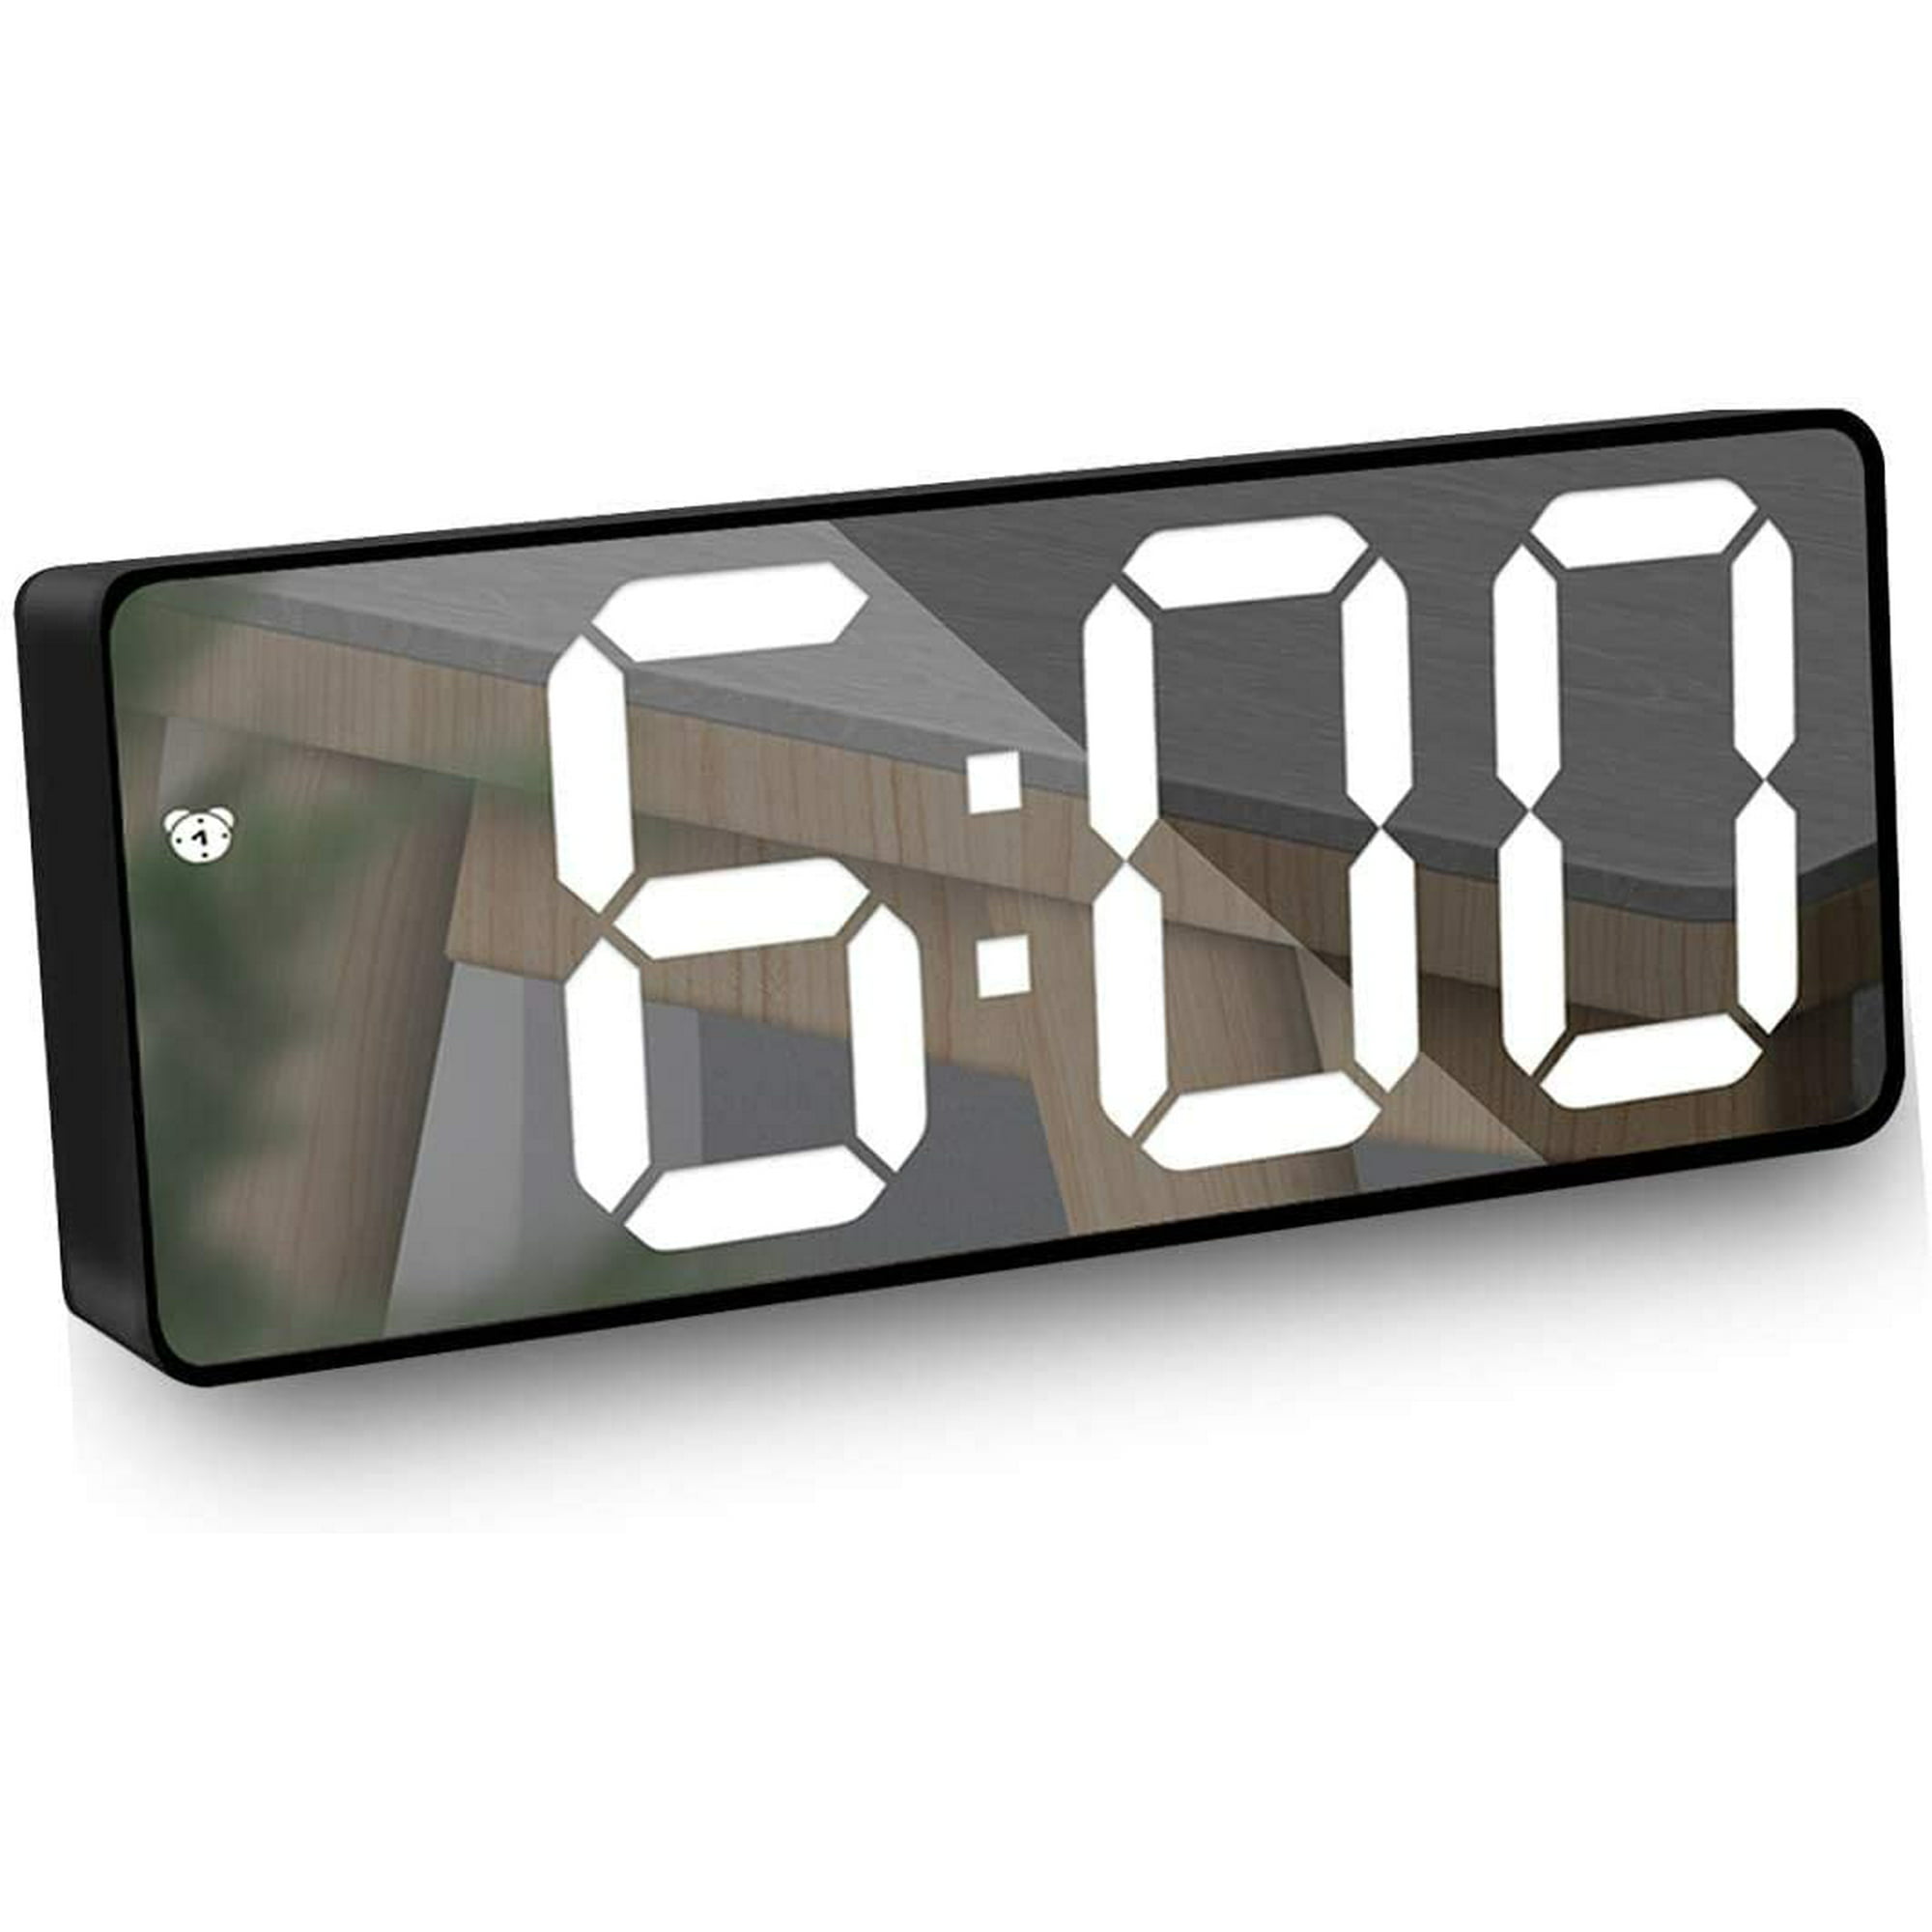 Comprar Reloj despertador LED digital con espejo, calendario de temperatura  y fecha, repetición, brillo ajustable, control por voz, modo nocturno